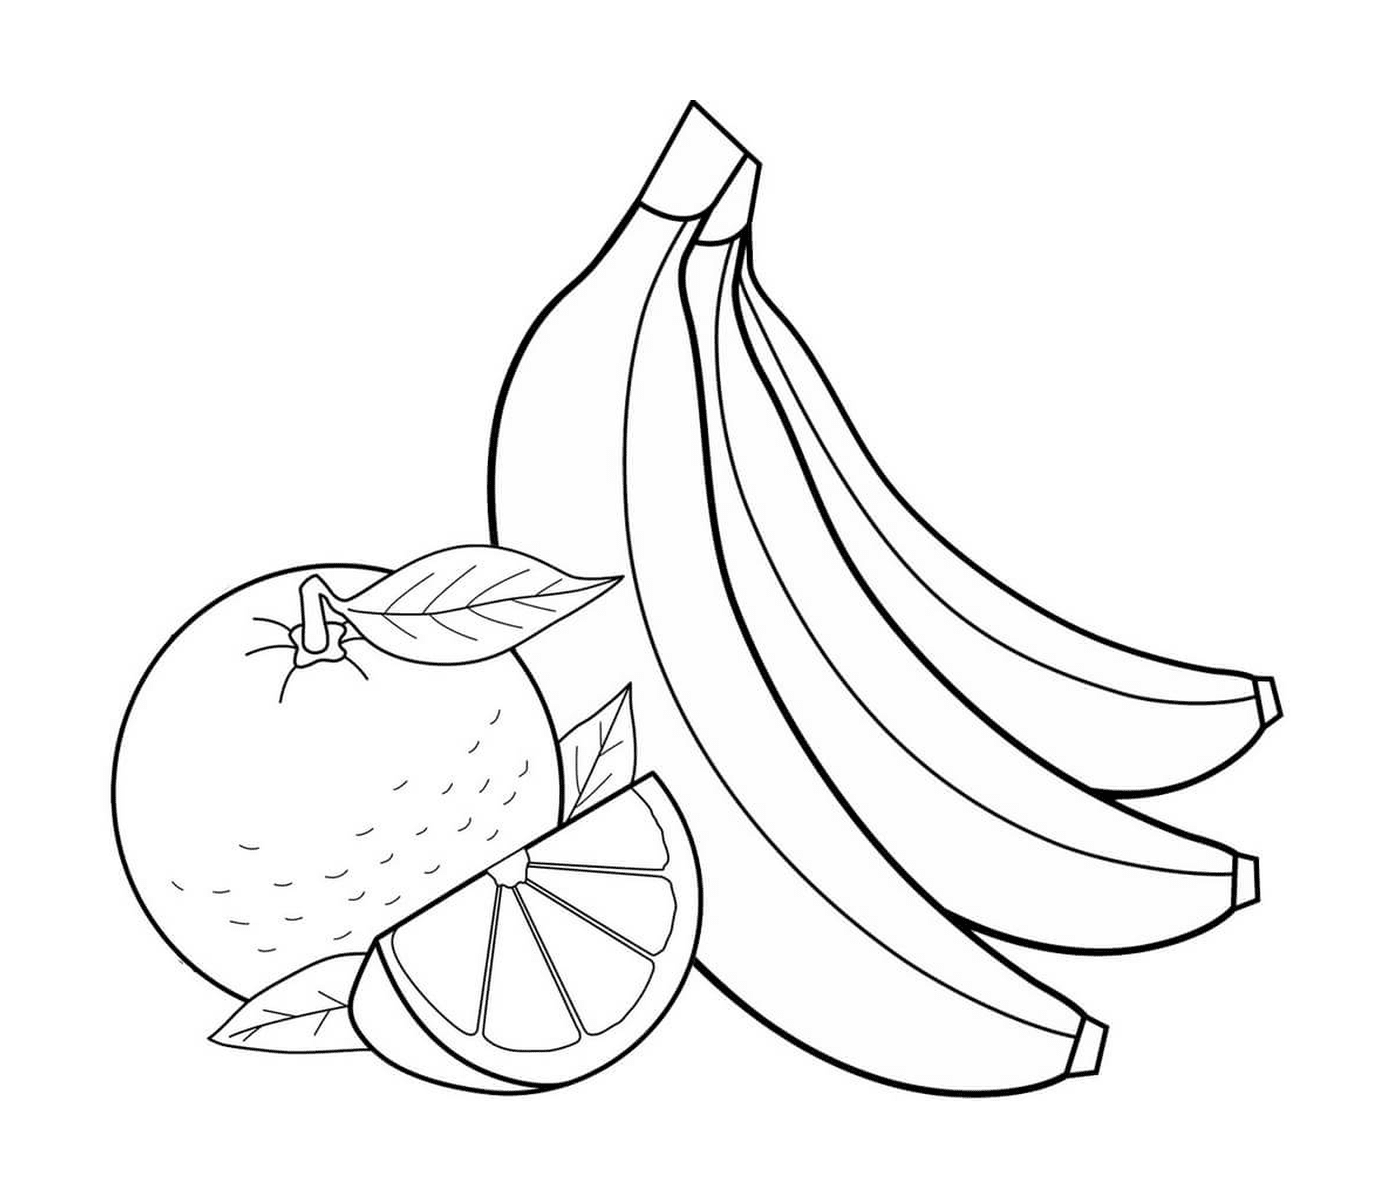  Mela, arancia e banana 